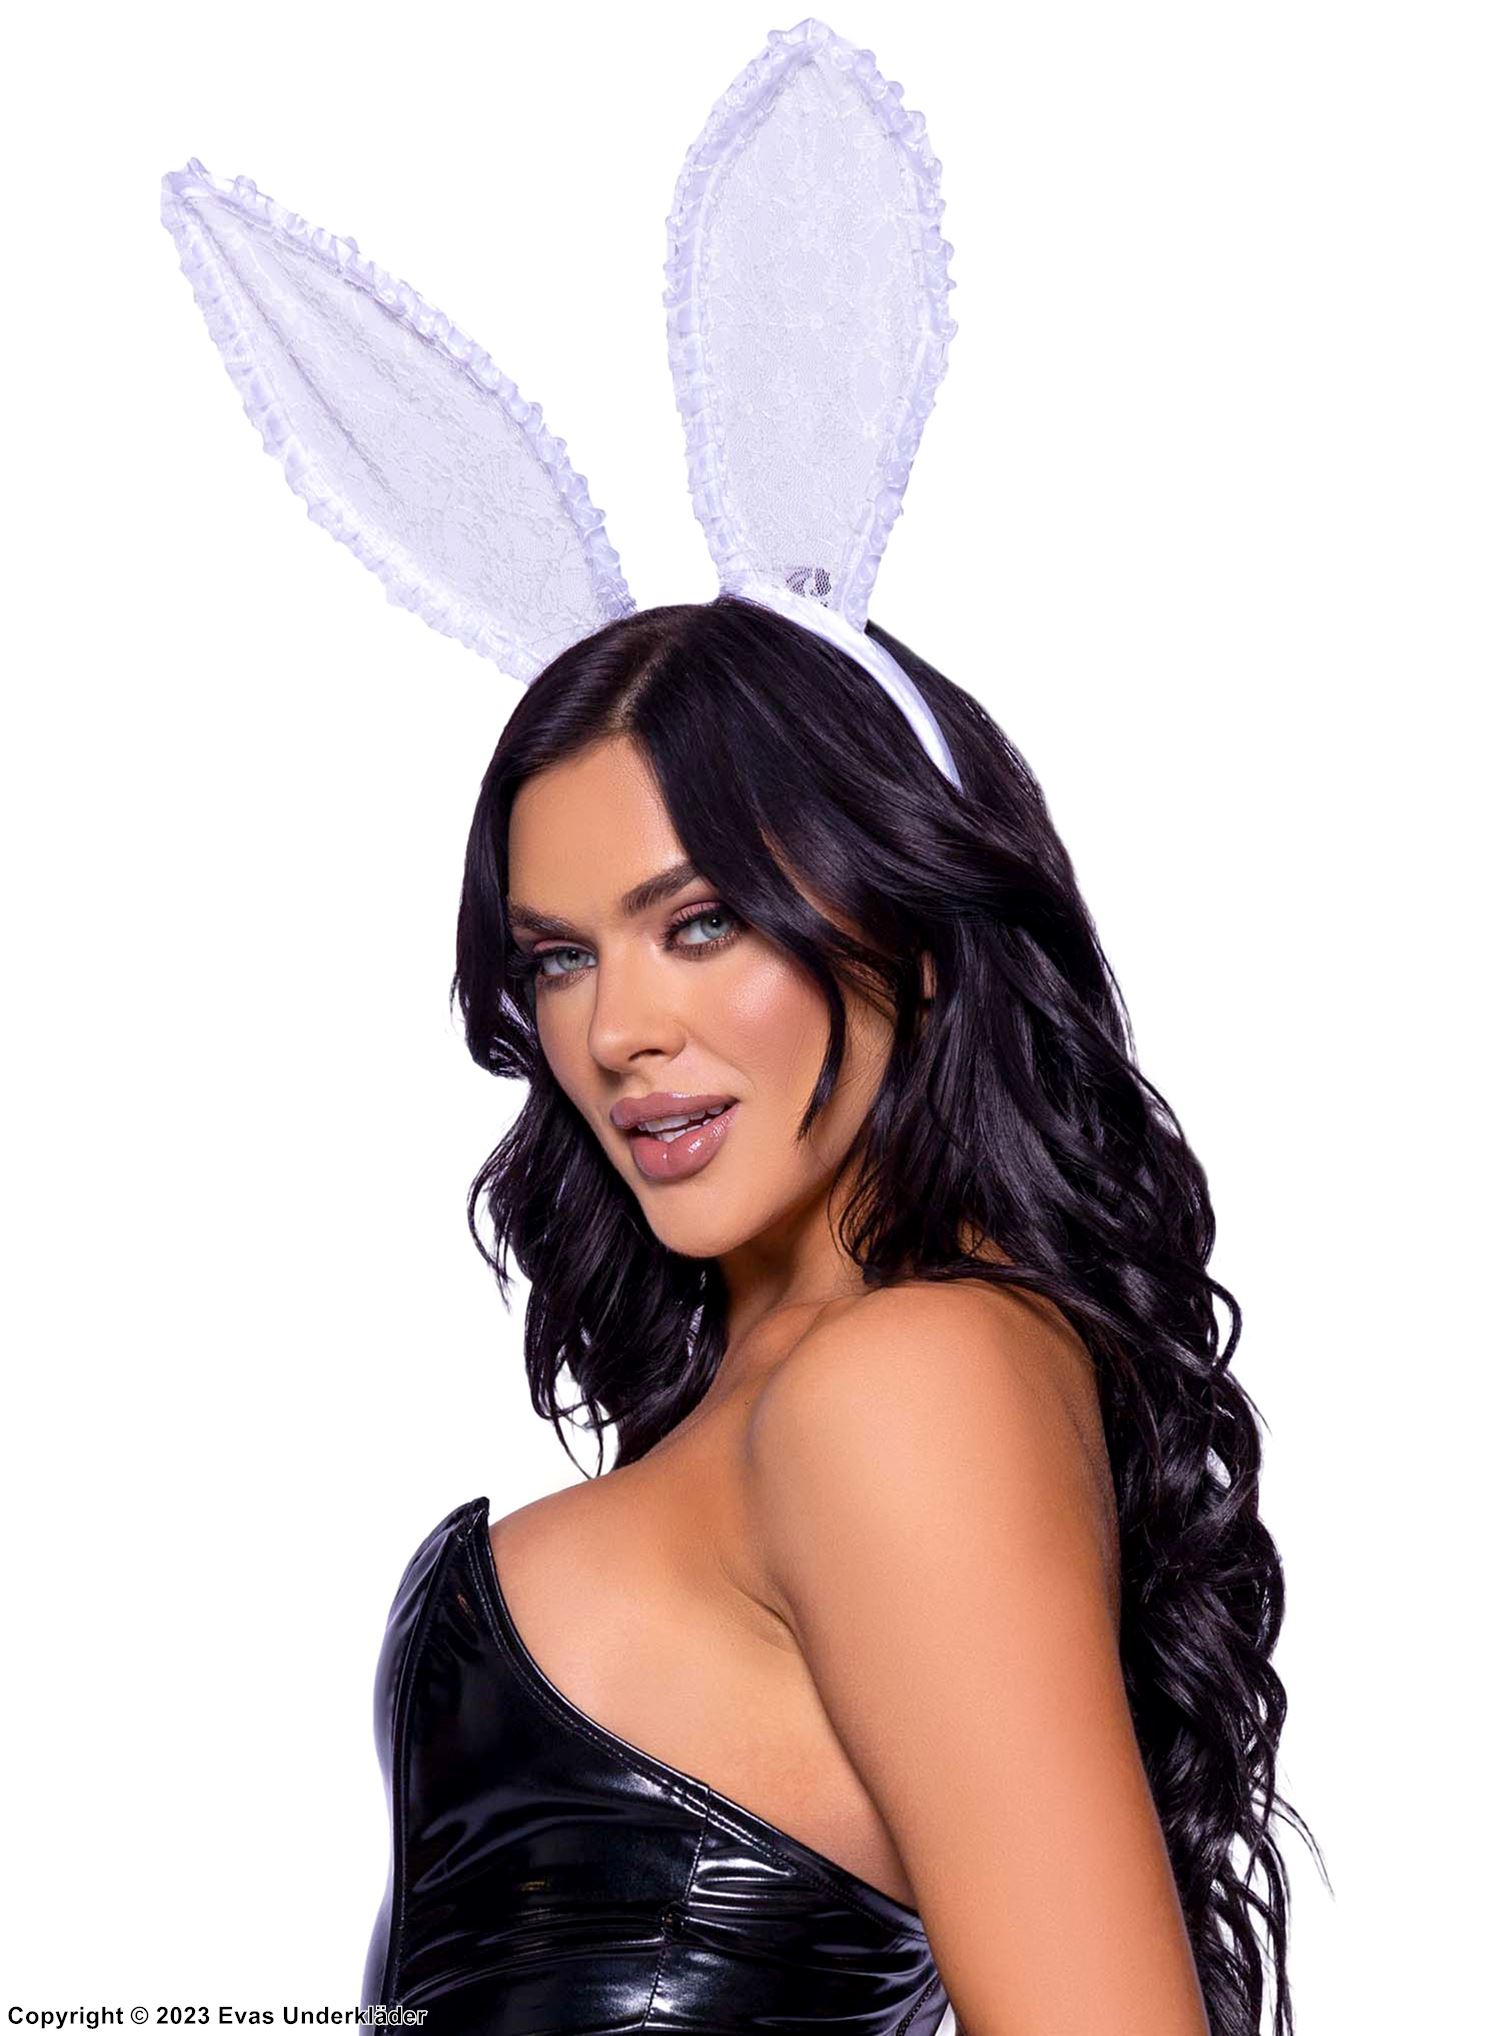 Playboy Hase, Kostüm-Kopfbedeckung, Blumenspitze, große Ohren